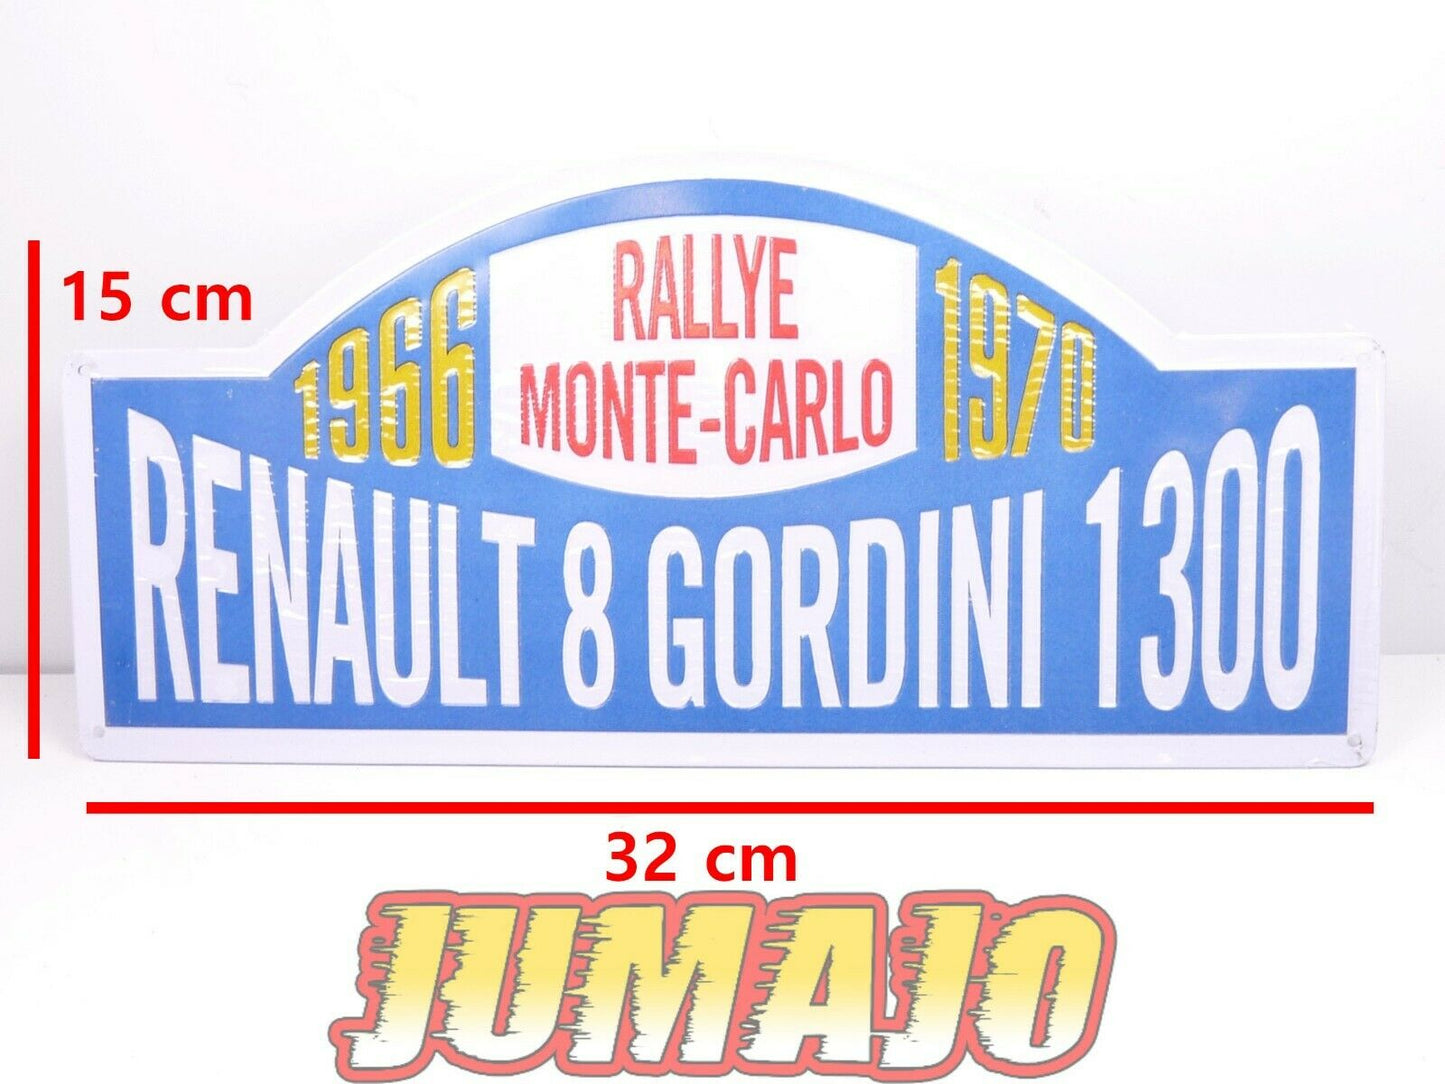 Lot 2 plaques RENAULT 12 & 8  : Dacia 1300  danube 1977 8 Gordini Monte carlo 66